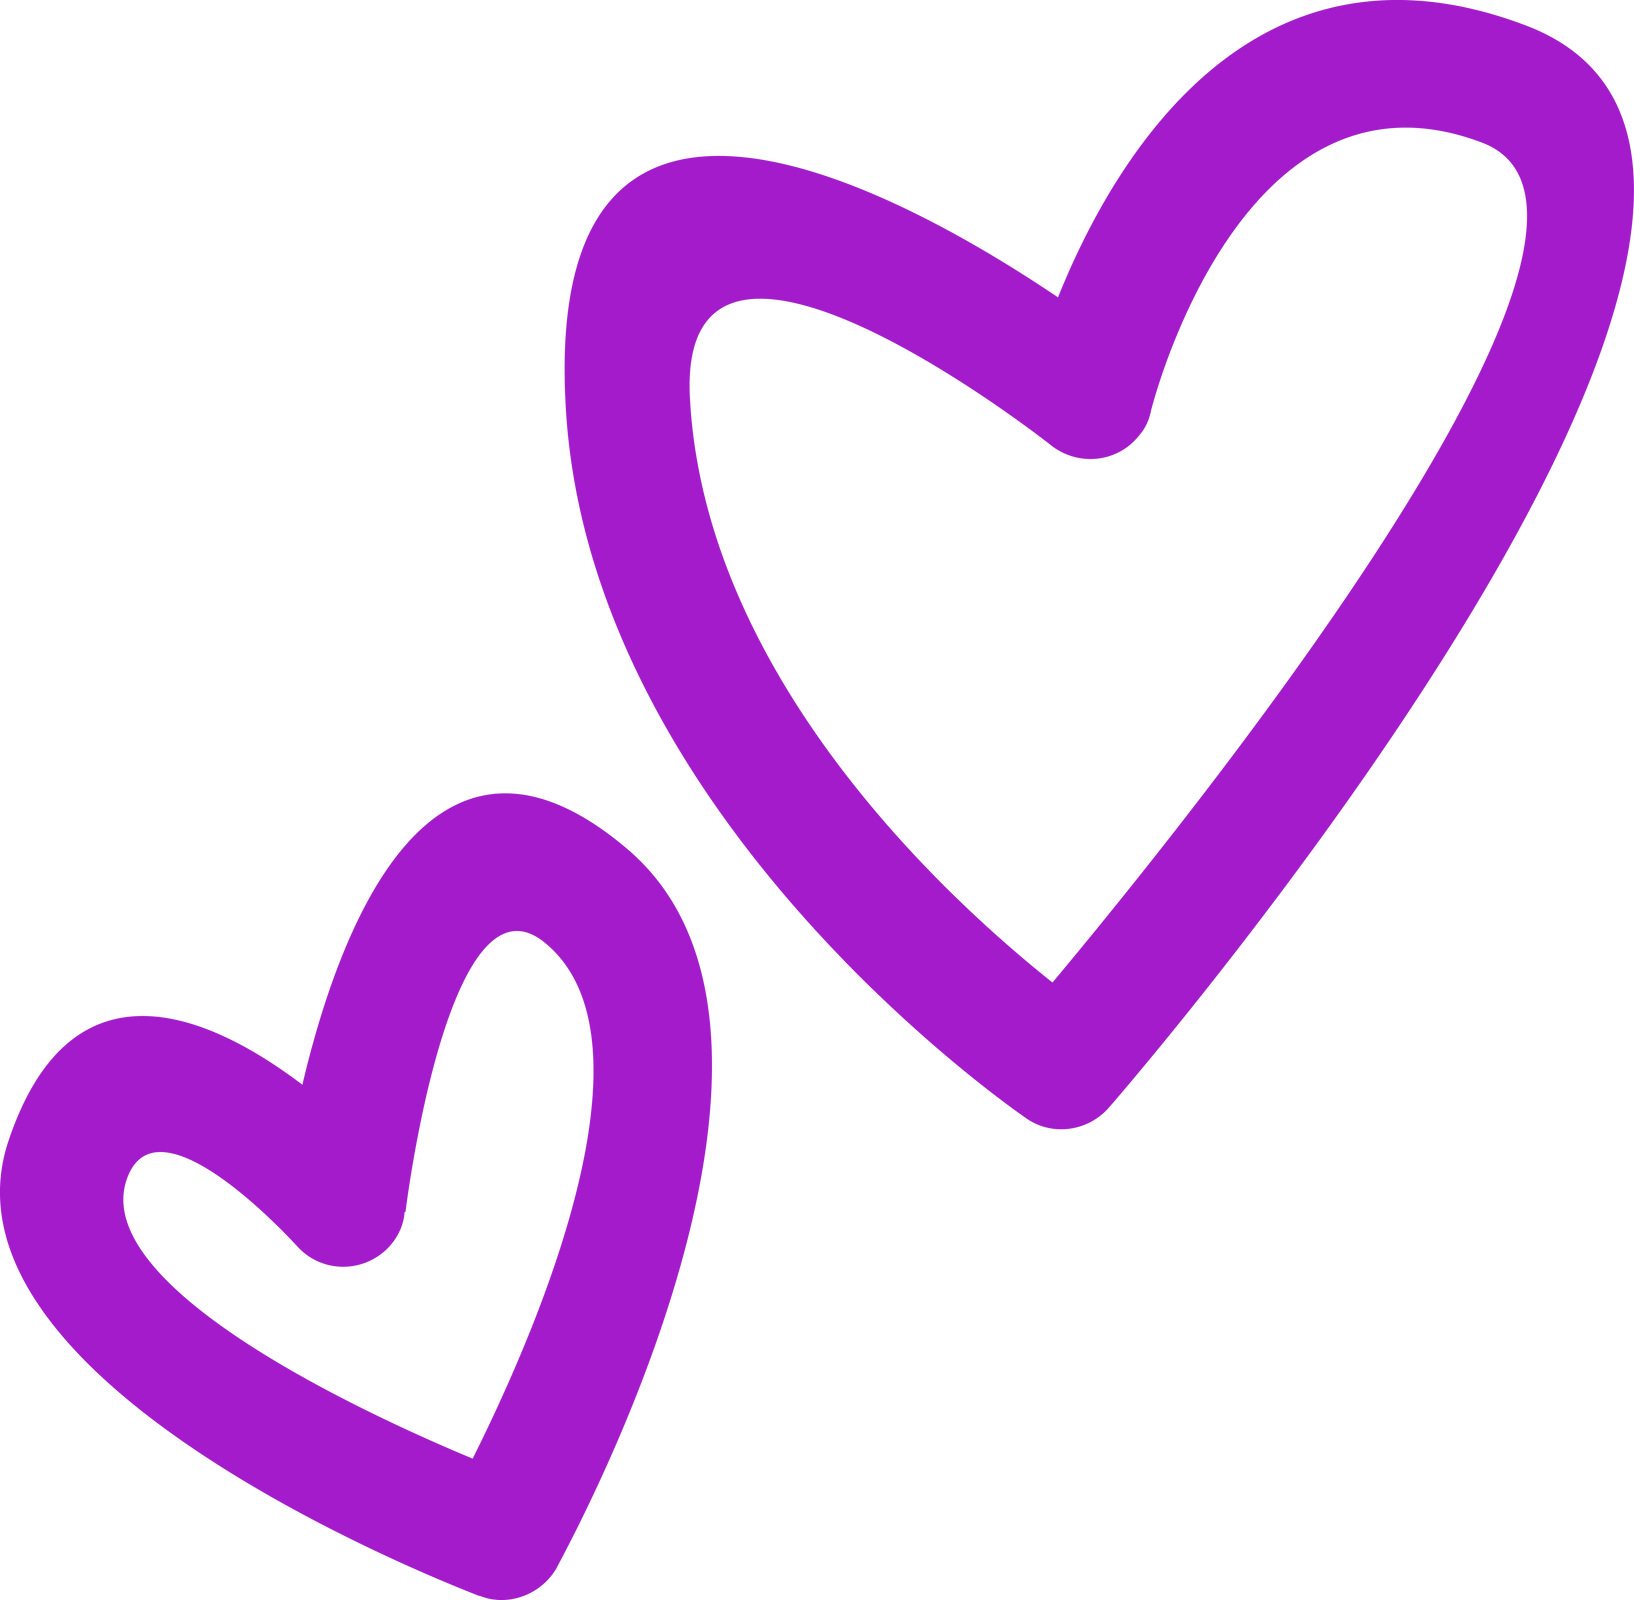 Cute simple aesthetic doodle purple heart